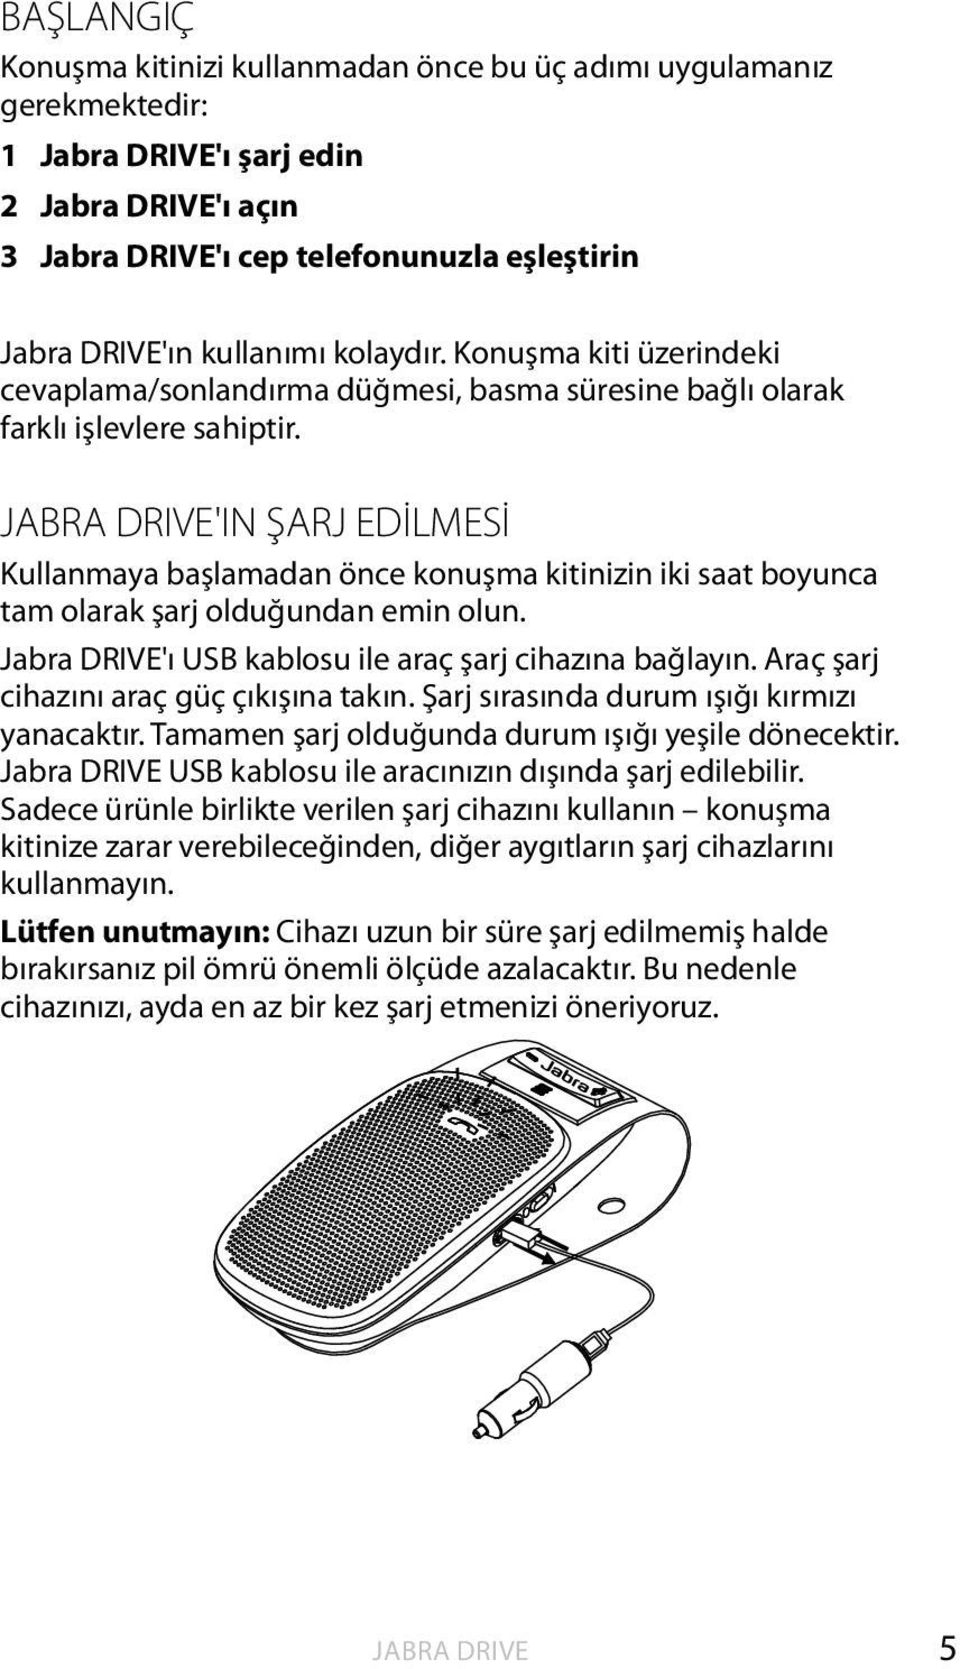 JABRA DRIVE'IN ŞARJ EDİLMESİ Kullanmaya başlamadan önce konuşma kitinizin iki saat boyunca tam olarak şarj olduğundan emin olun. 'ı USB kablosu ile araç şarj cihazına bağlayın.